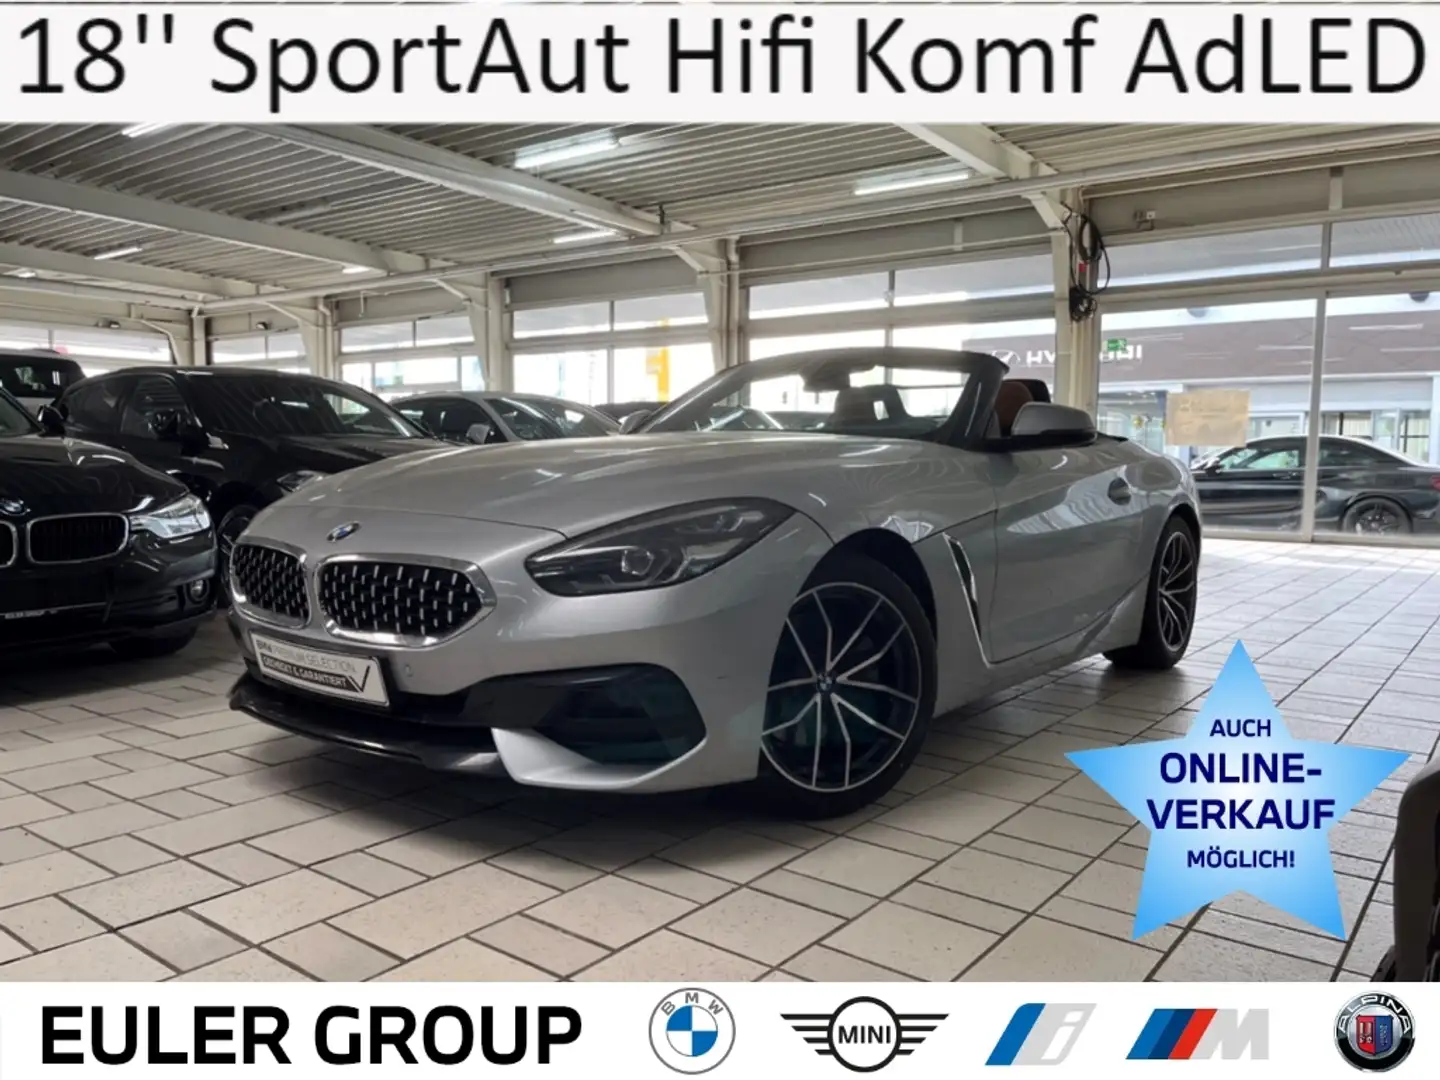 BMW Z4 20i Sport Line 18'' SportAut Hifi Leder Komf AdLED Silver - 1